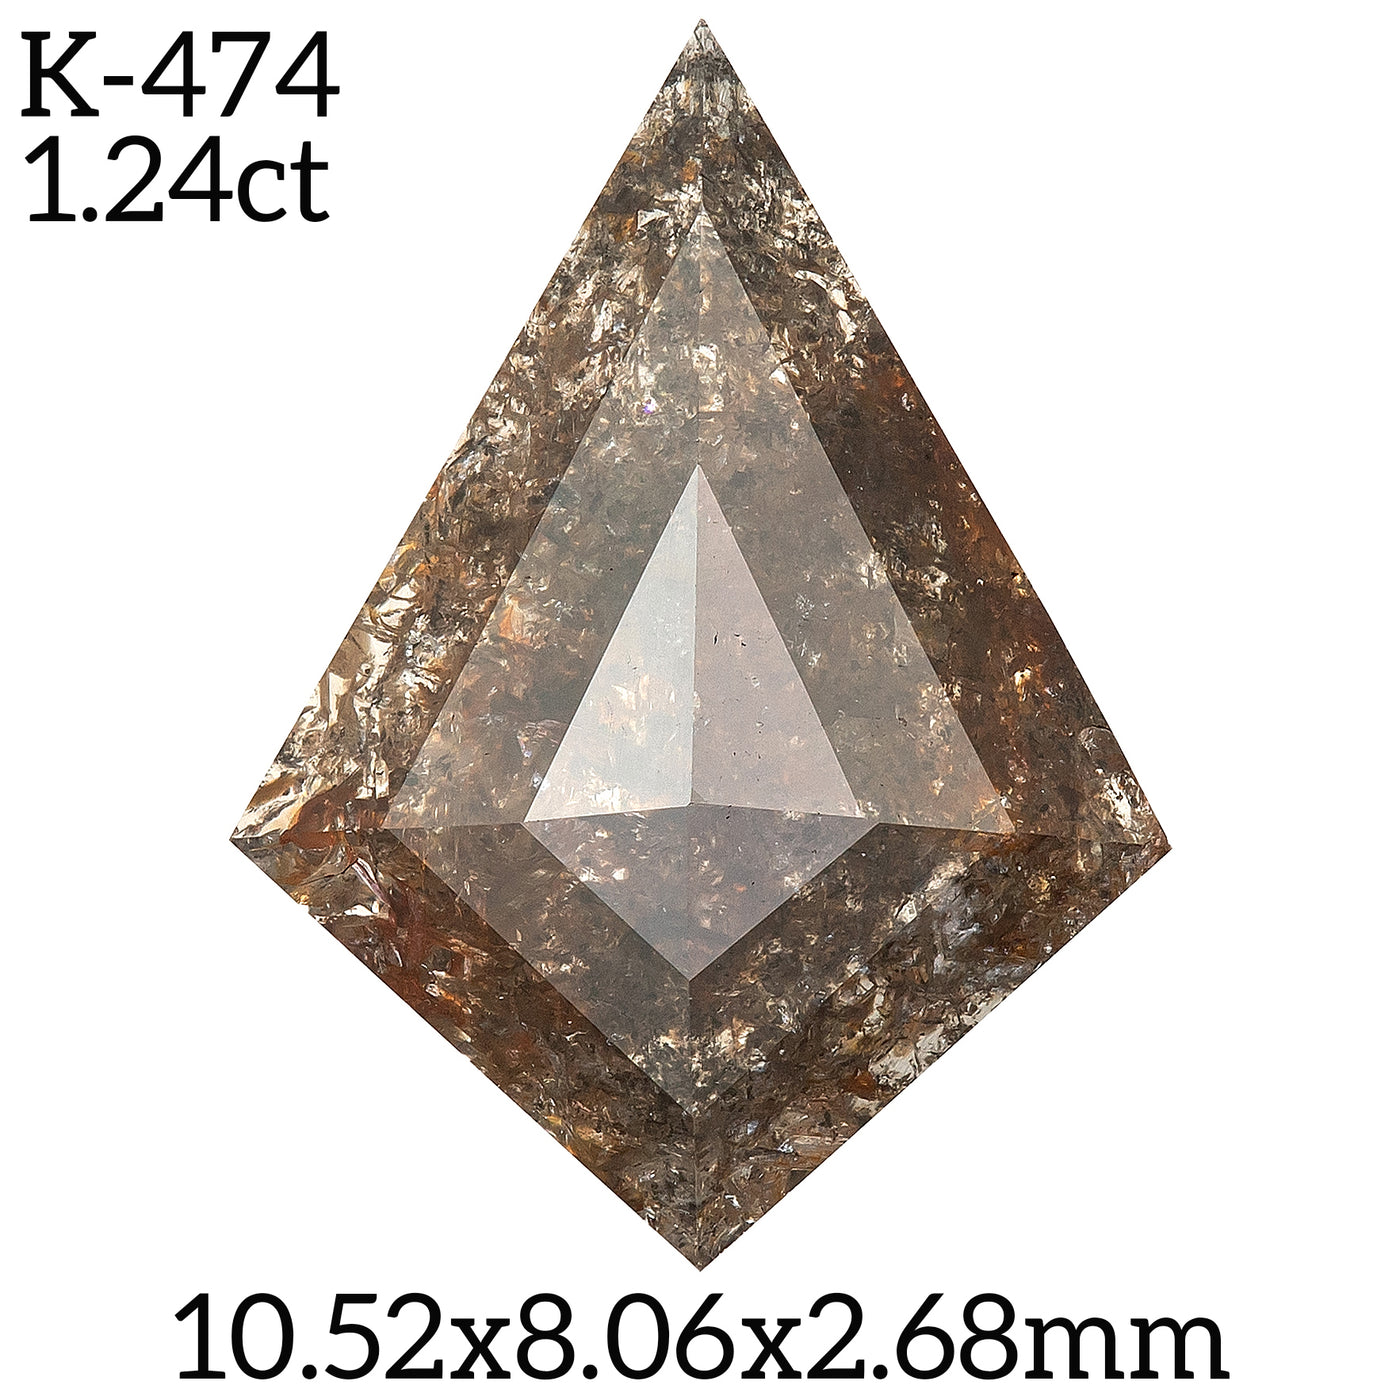 K474 - Salt and pepper kite diamond